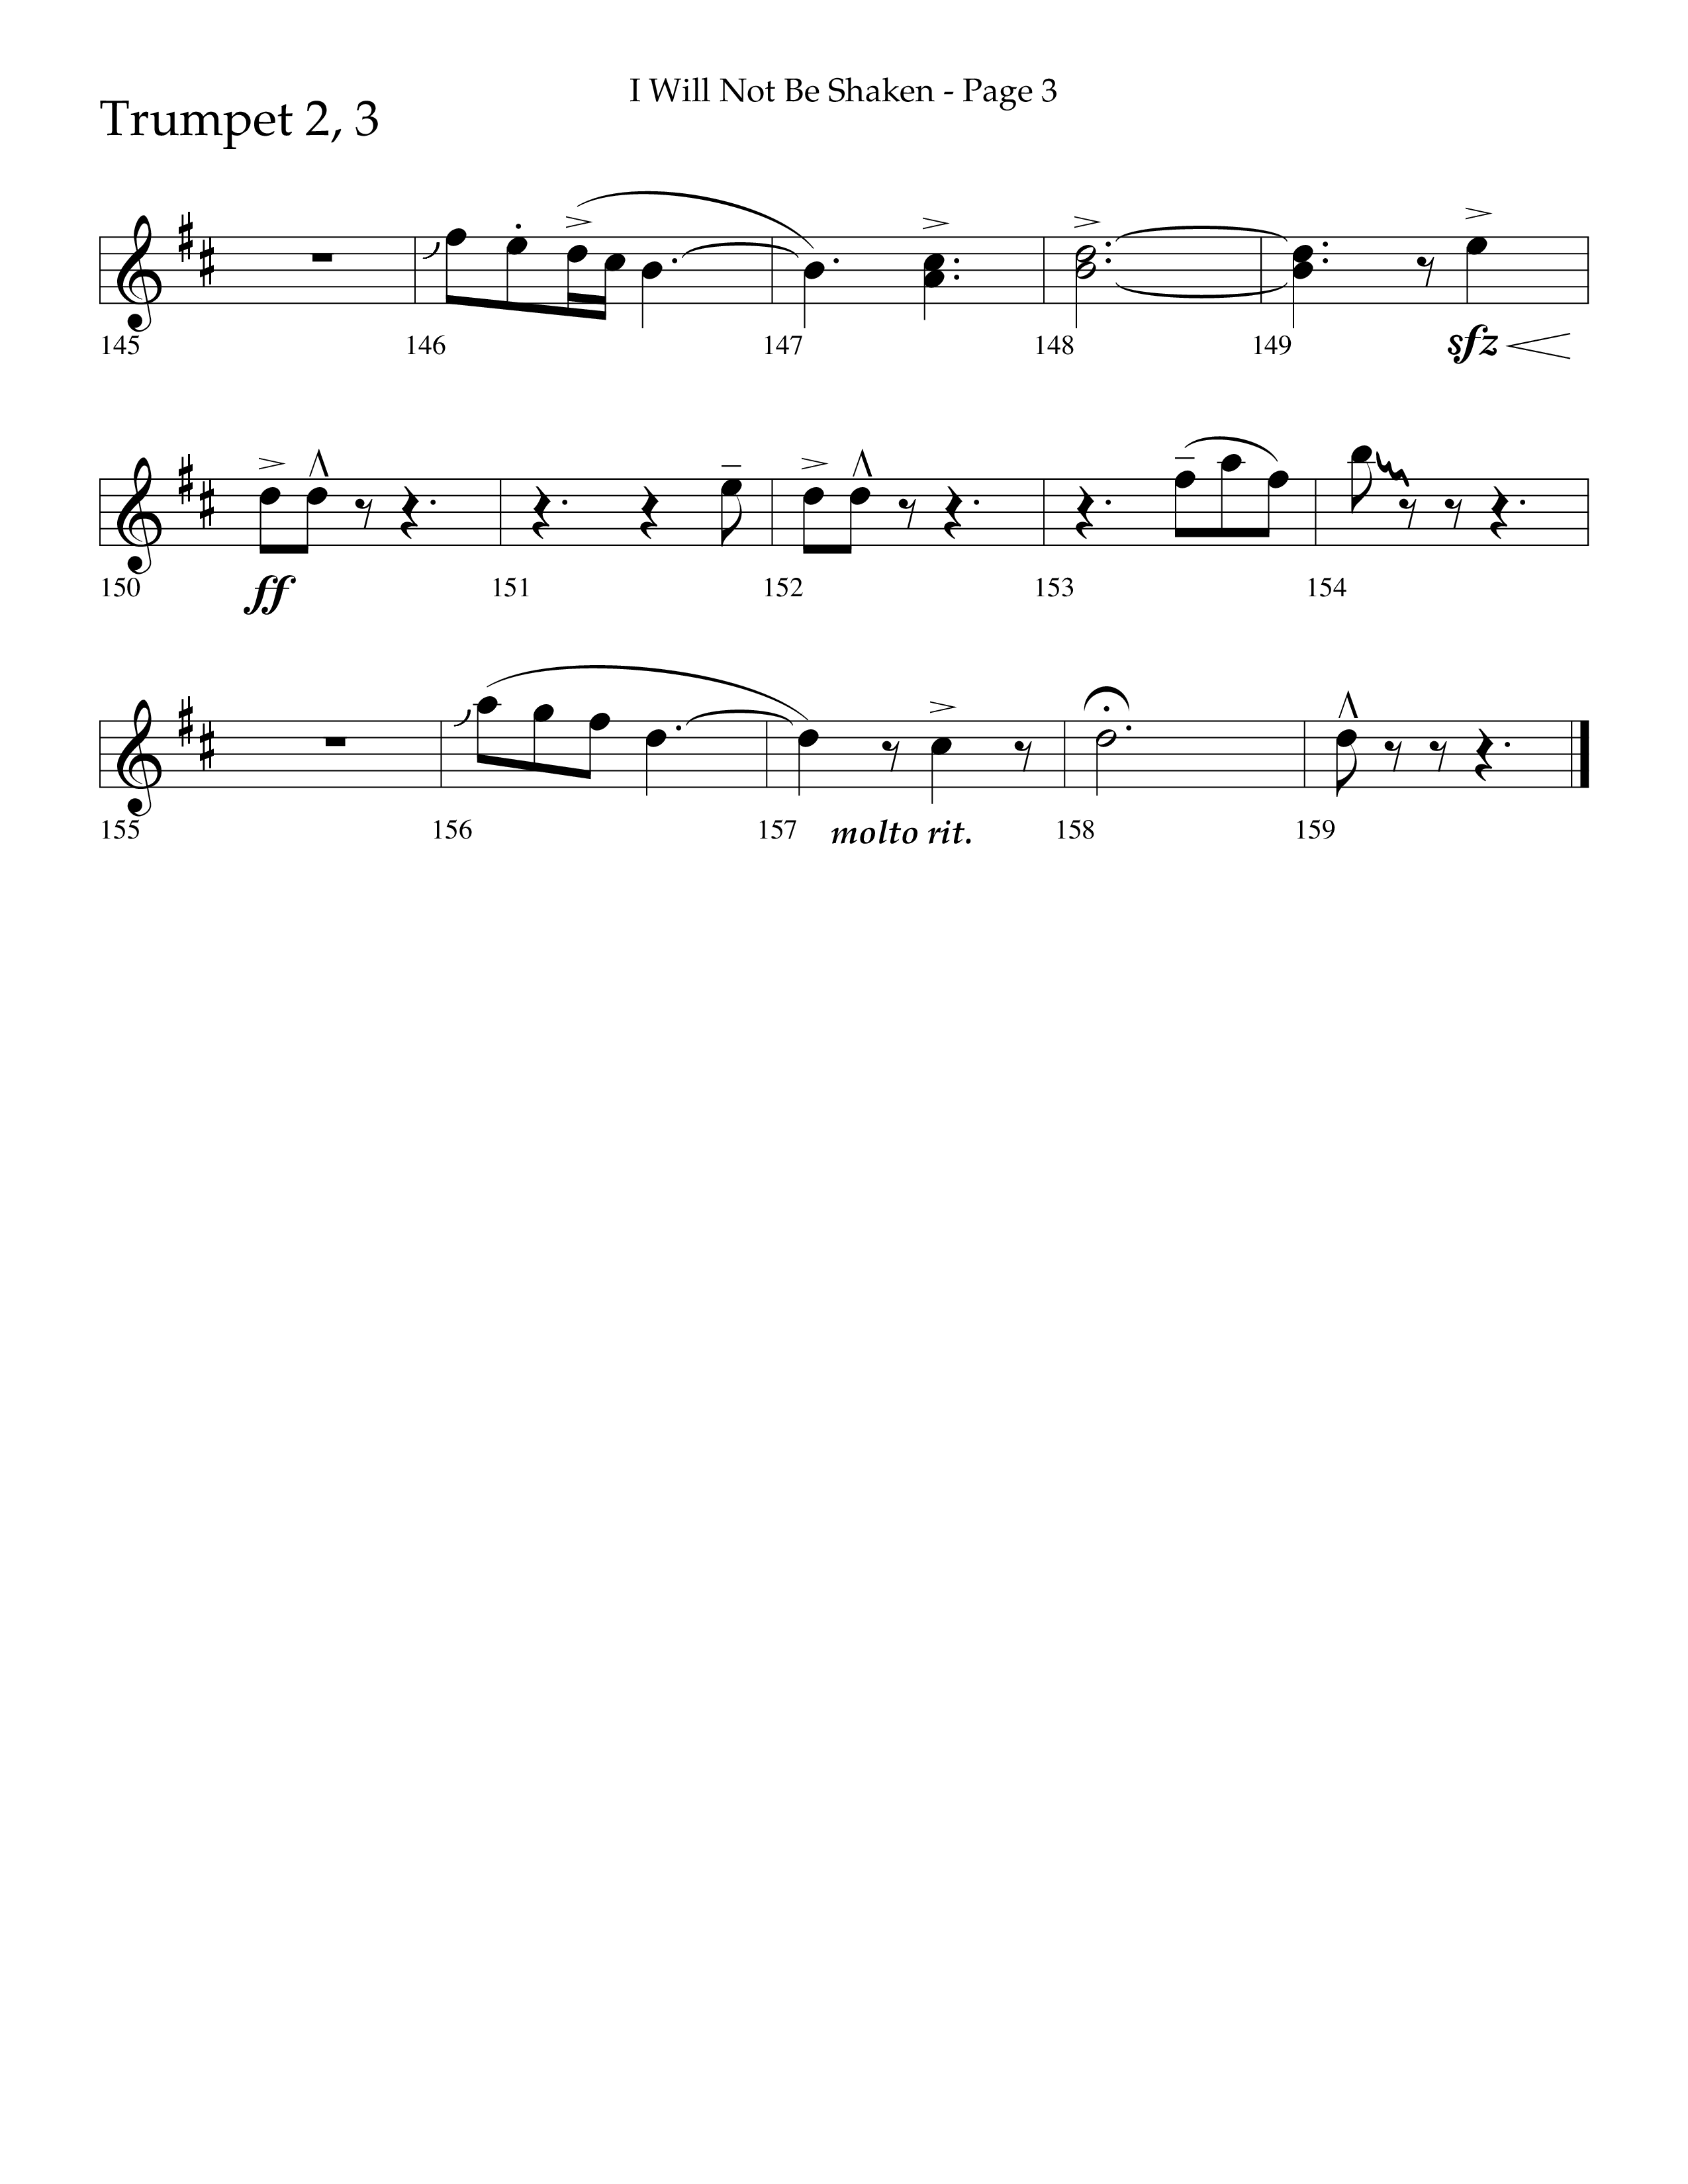 I Will Not Be Shaken (Choral Anthem SATB) Trumpet 2/3 (Lifeway Choral / Arr. Cliff Duren)